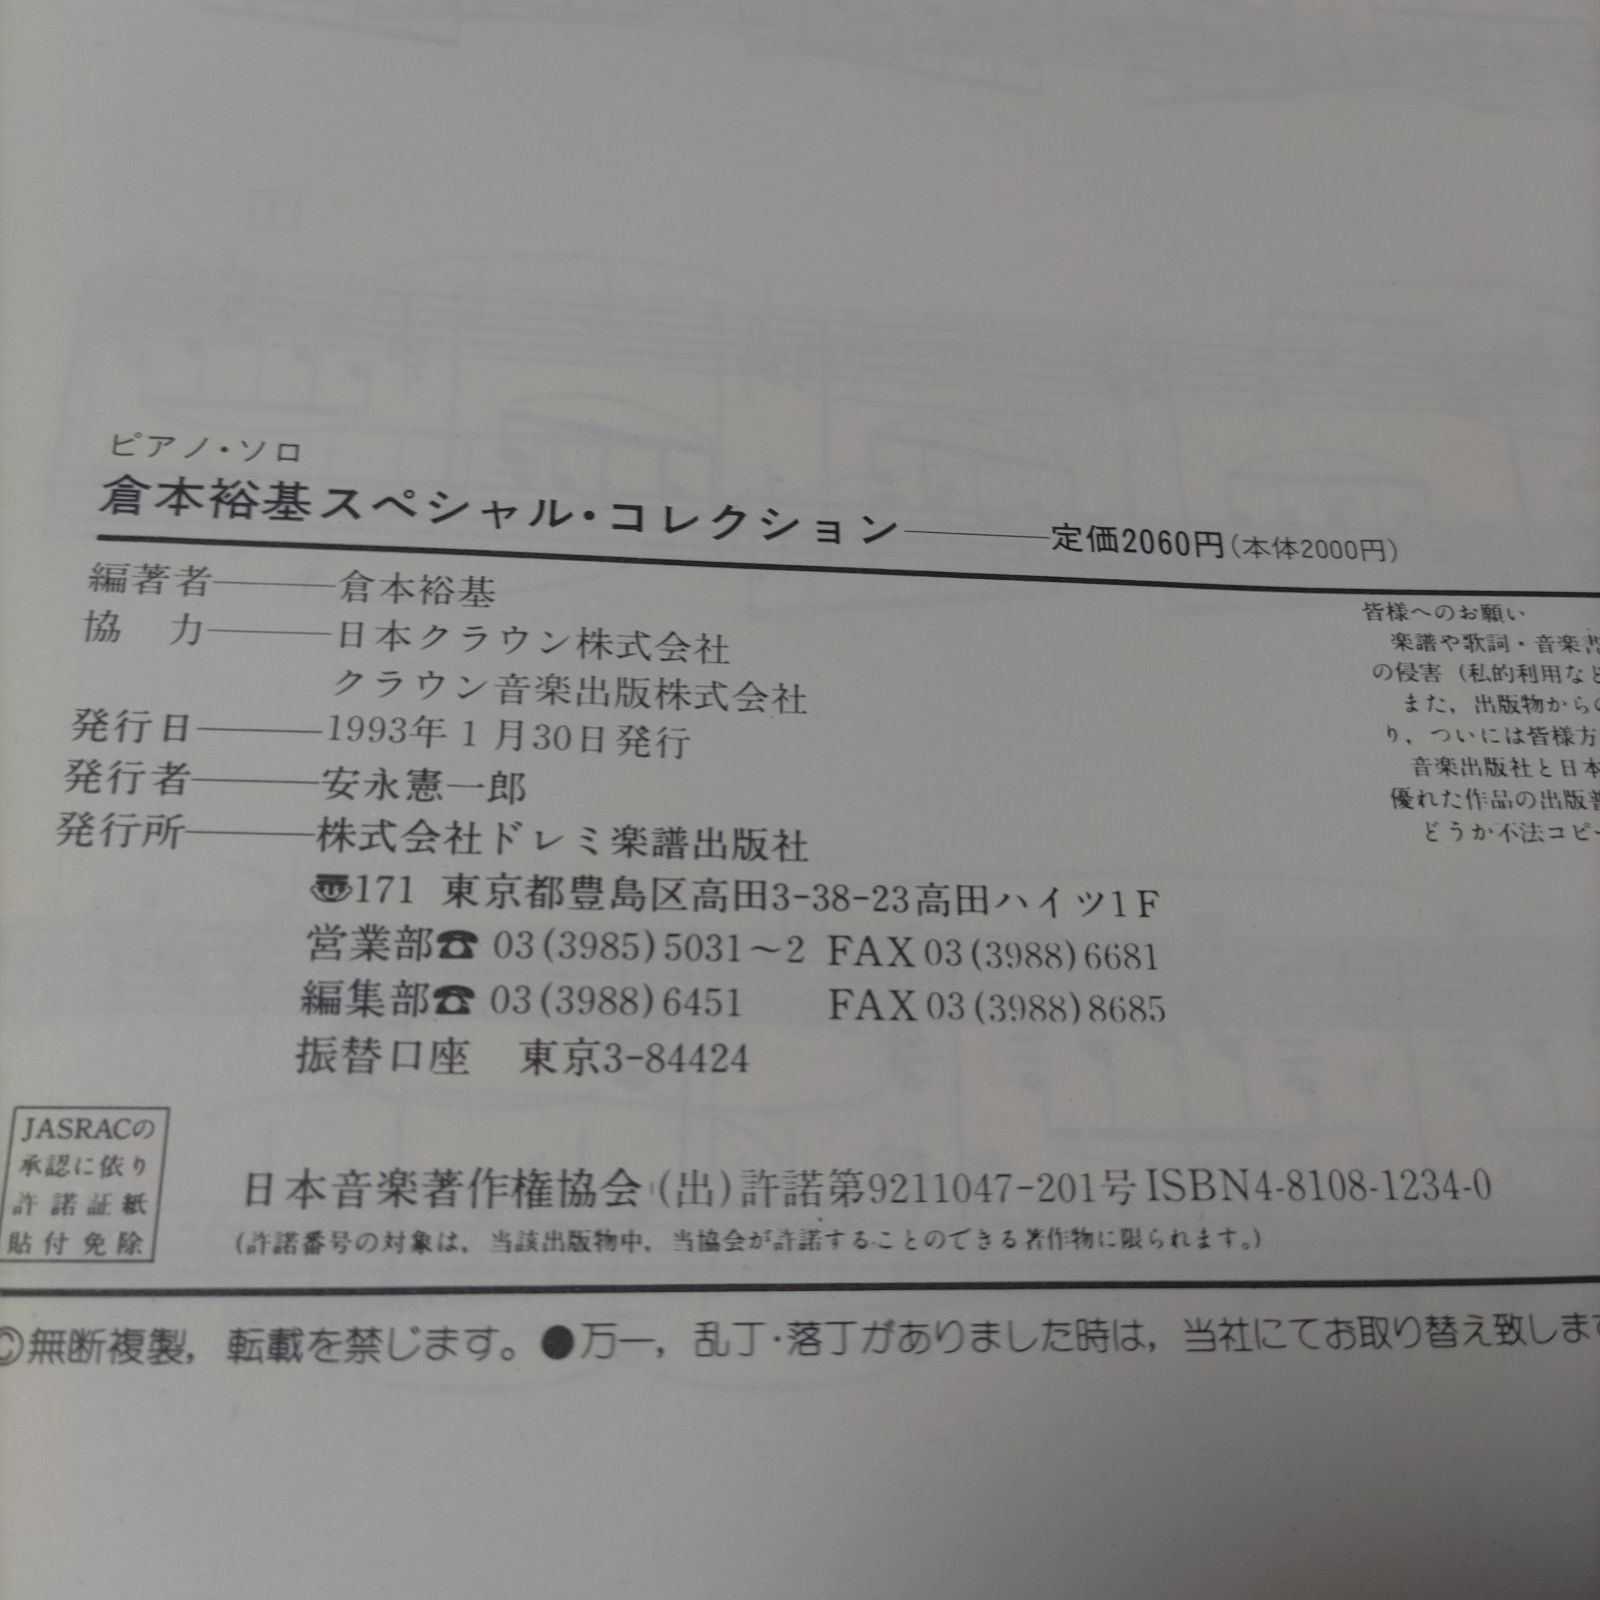 ピアノソロ 倉本裕基 スペシャル・コレクション 楽譜 棚HNa3 - メルカリ